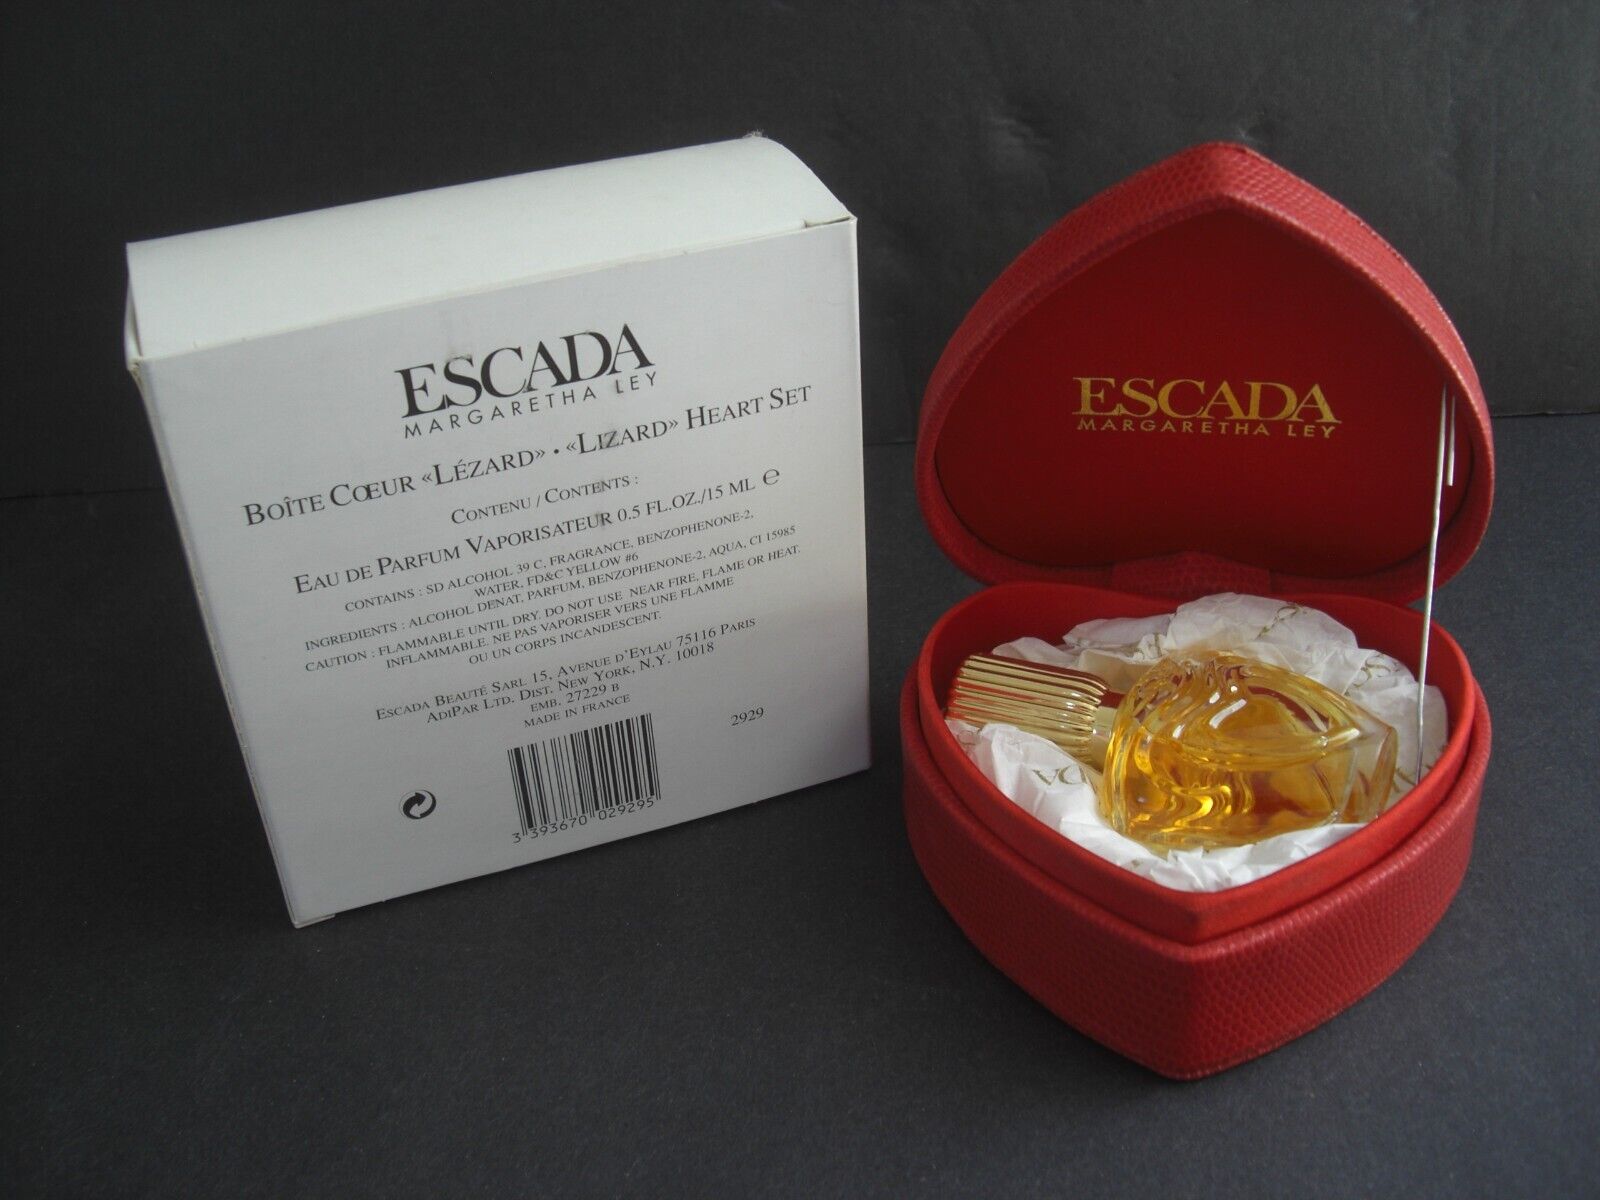 Vintage Escada Margaretha Ley Perfume 0.5fl oz/15ml Bottle In Heart Shaped Box